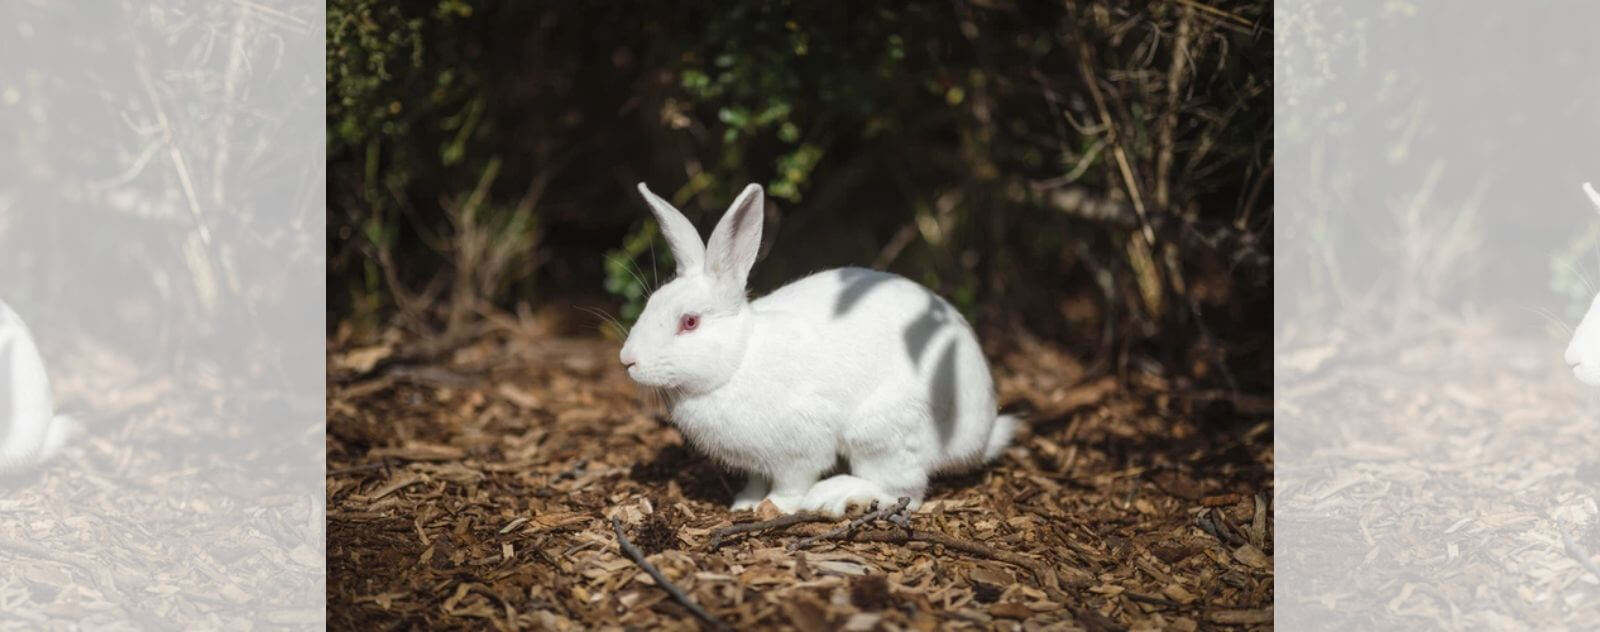 Conejo blanco en un bosque y en su hábitat natural lagomorfo